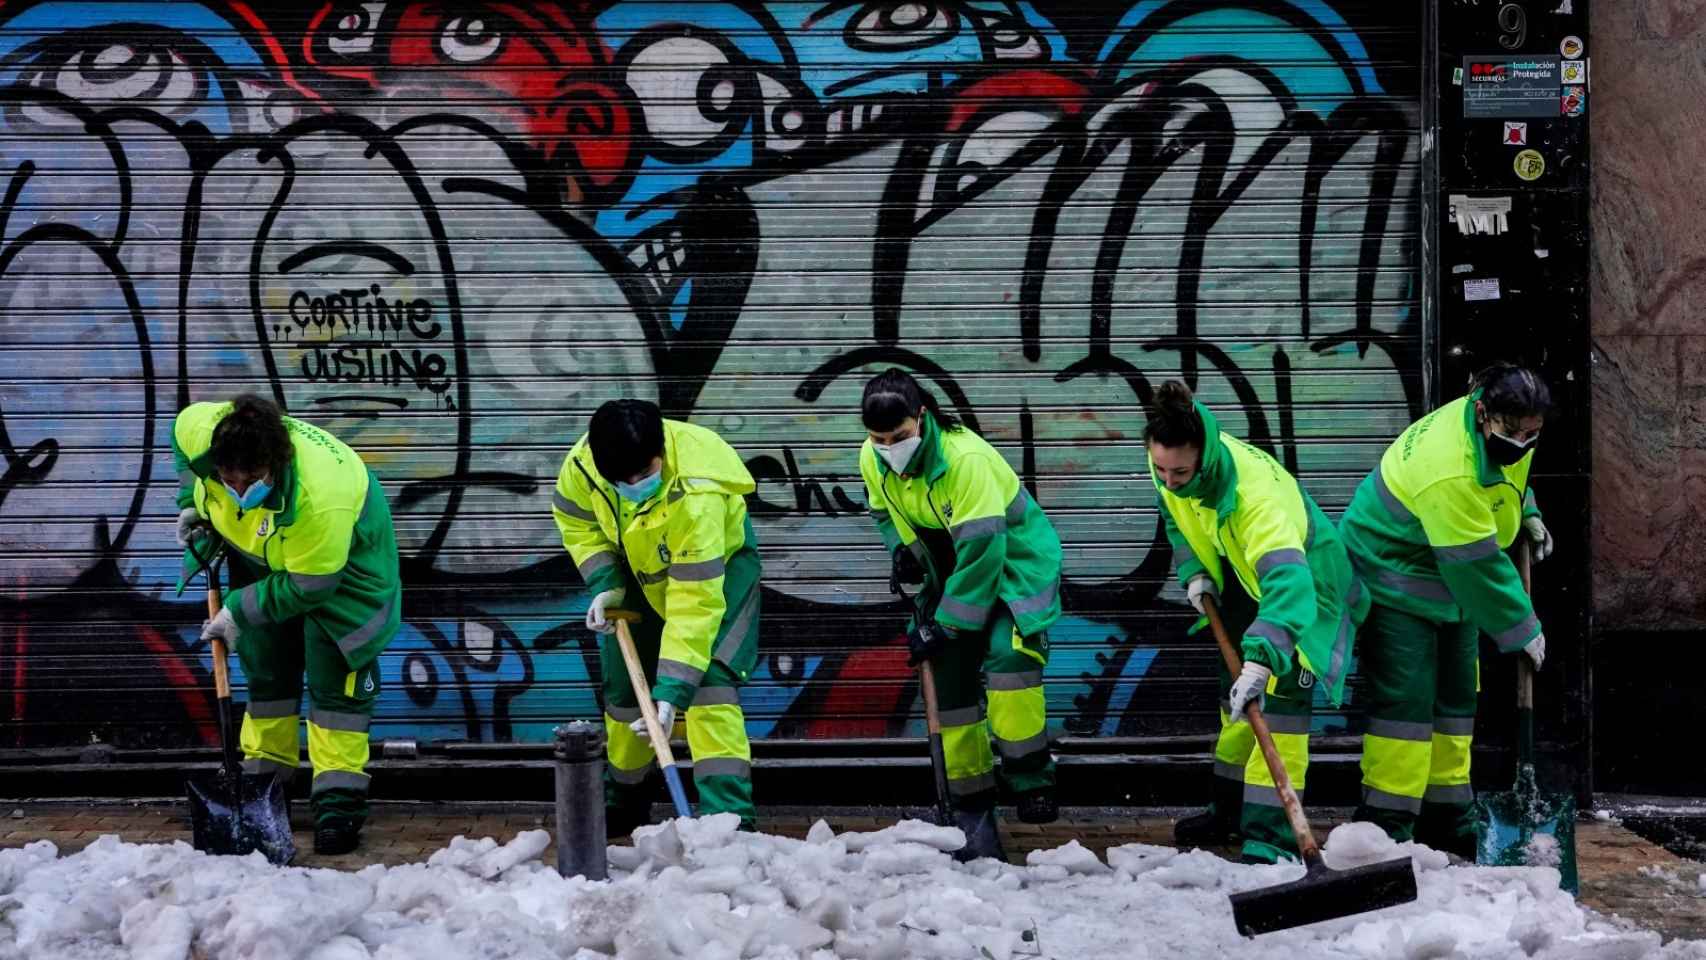 Los fallos en la debacle de Madrid por la nieve: no se retiró desde el domingo y 200 máquinas eran pocas